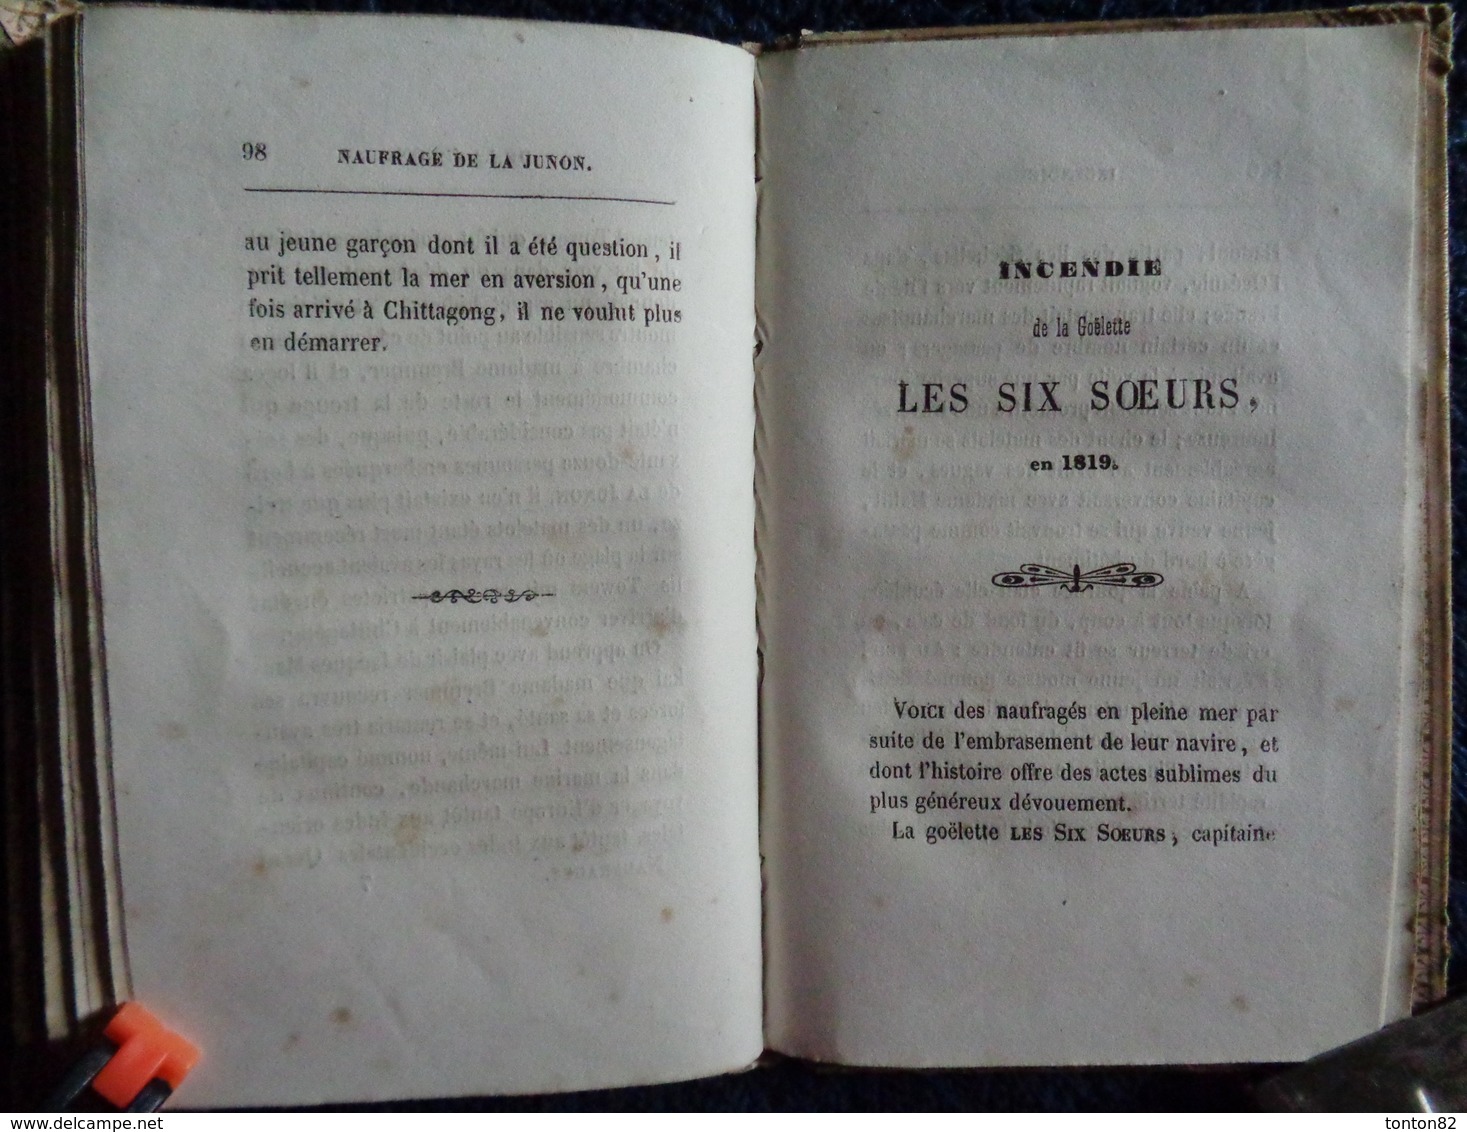 Antoine - Abrégé de l'Histoire des Naufrages - Librairie des Bon Livres - ( 1853 ) .